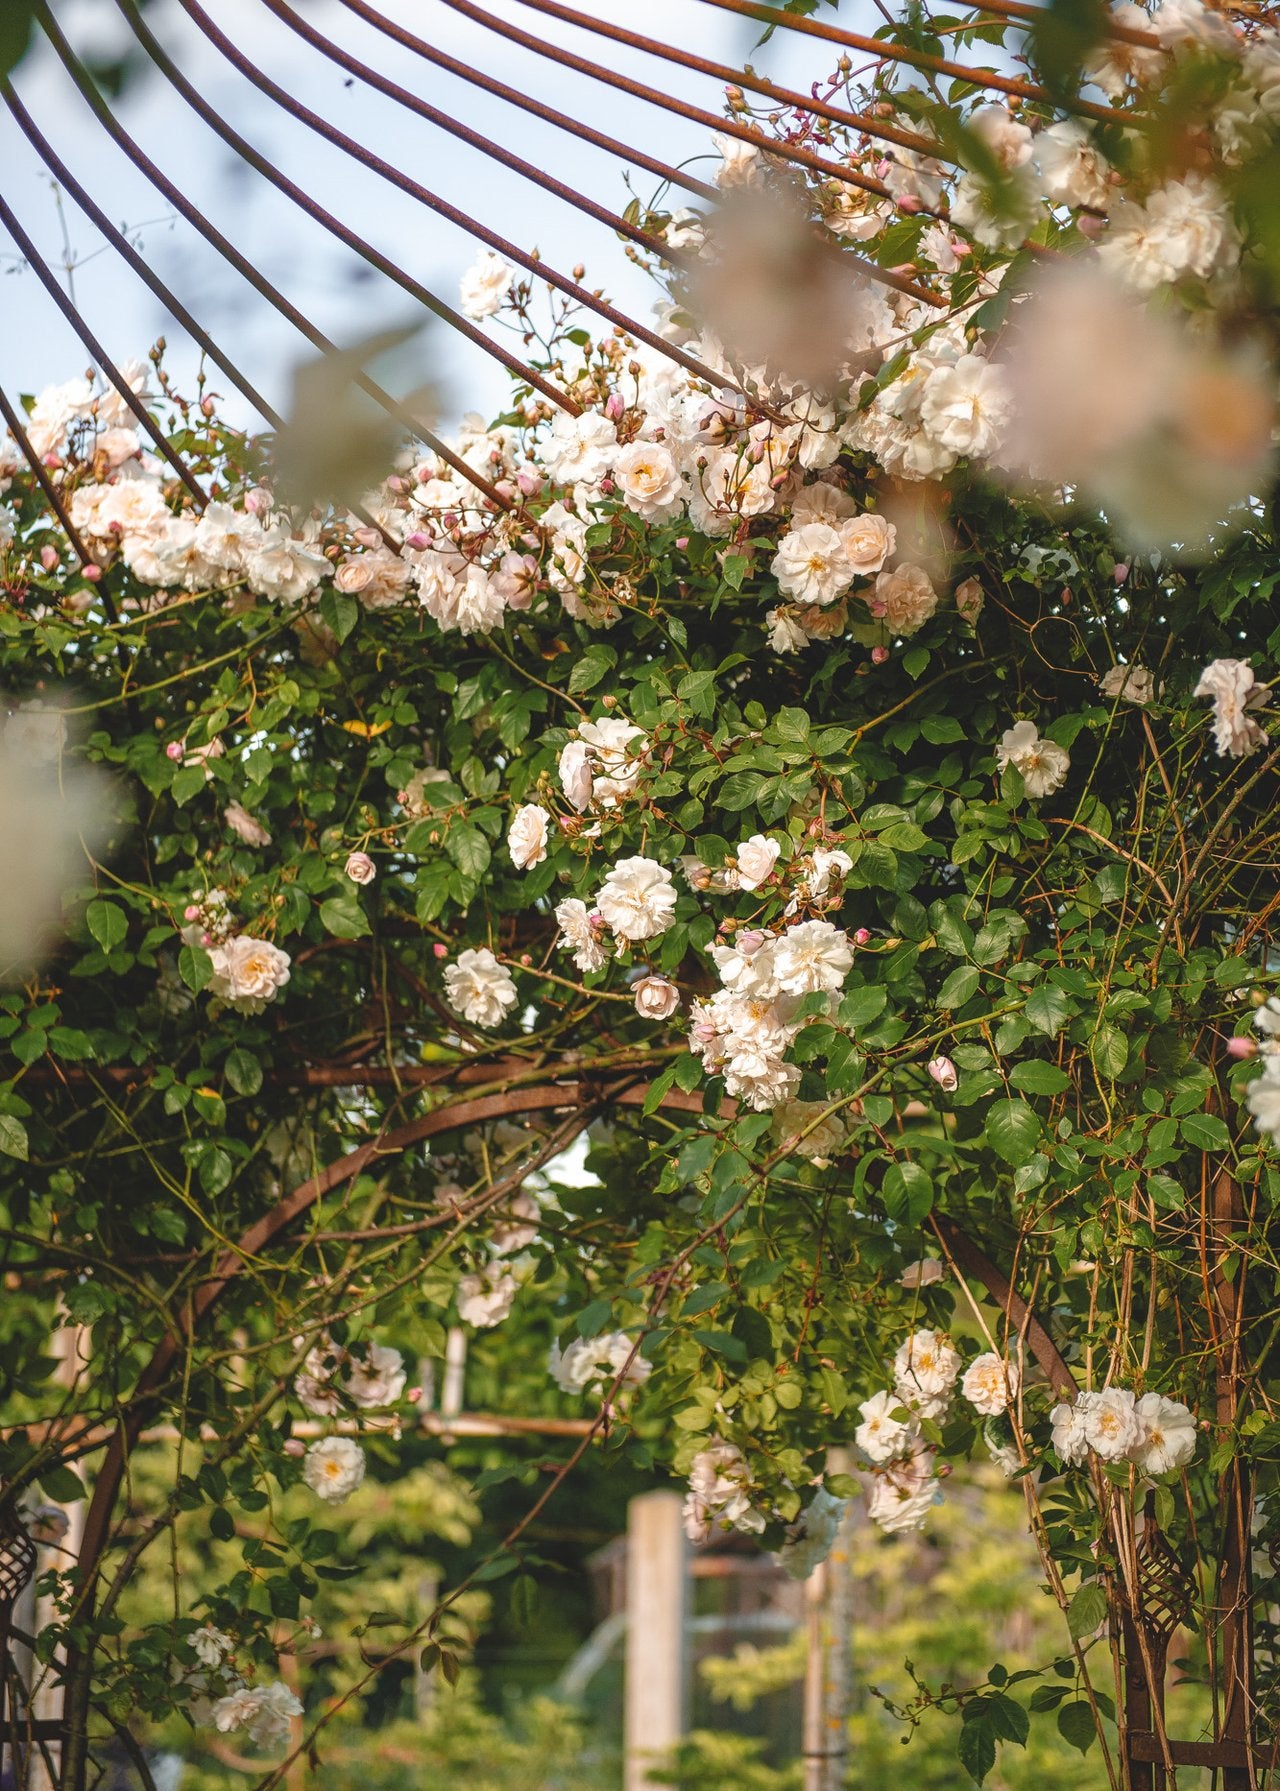 How To: Prune Rambling Roses